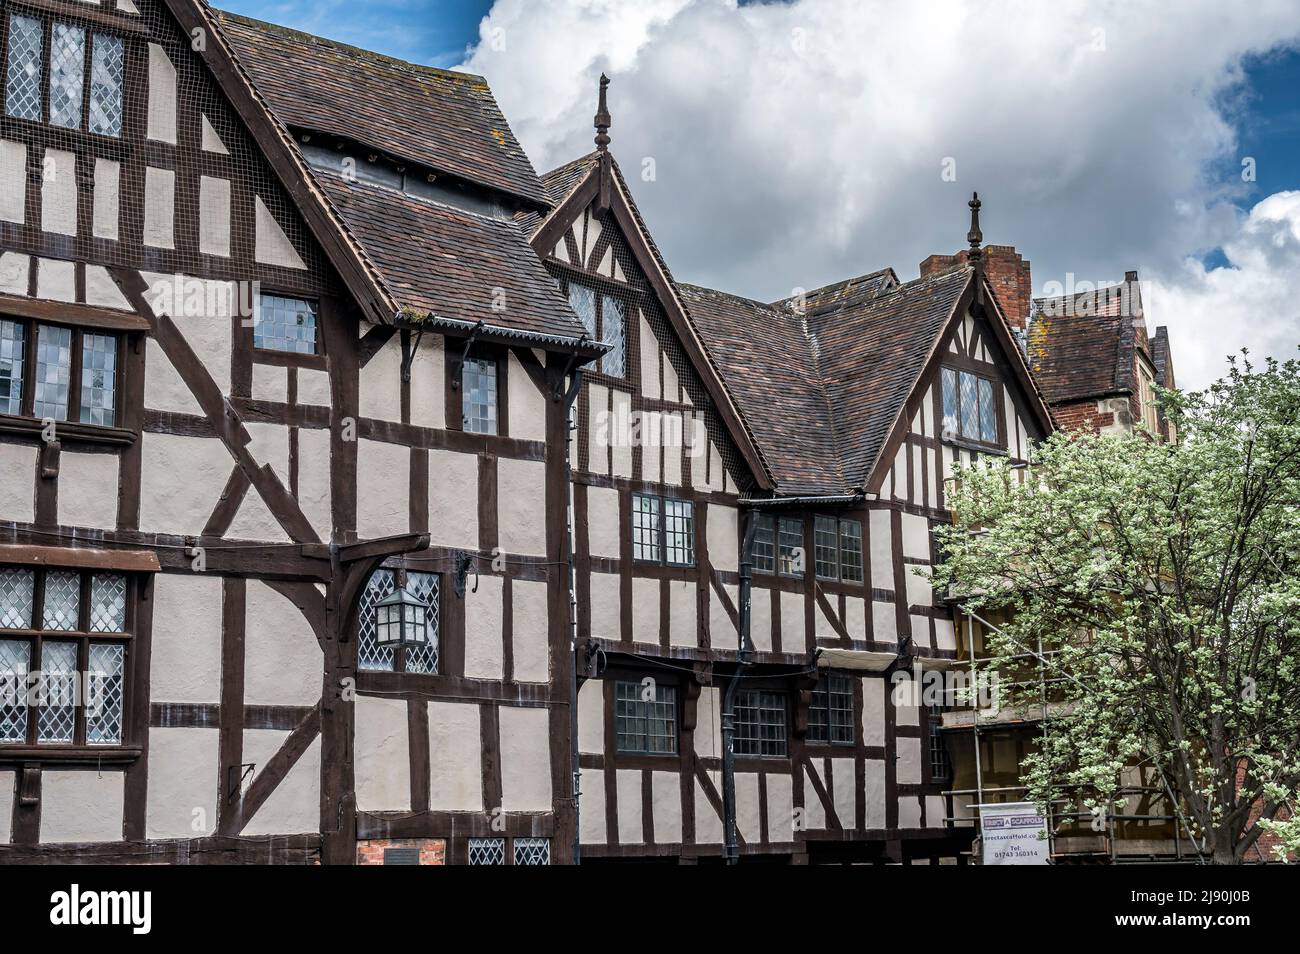 L'image est de la maison et du manoir médiéval de Rowley datant du 16th siècle, l'un des bâtiments les plus importants de Shrewsbury Banque D'Images